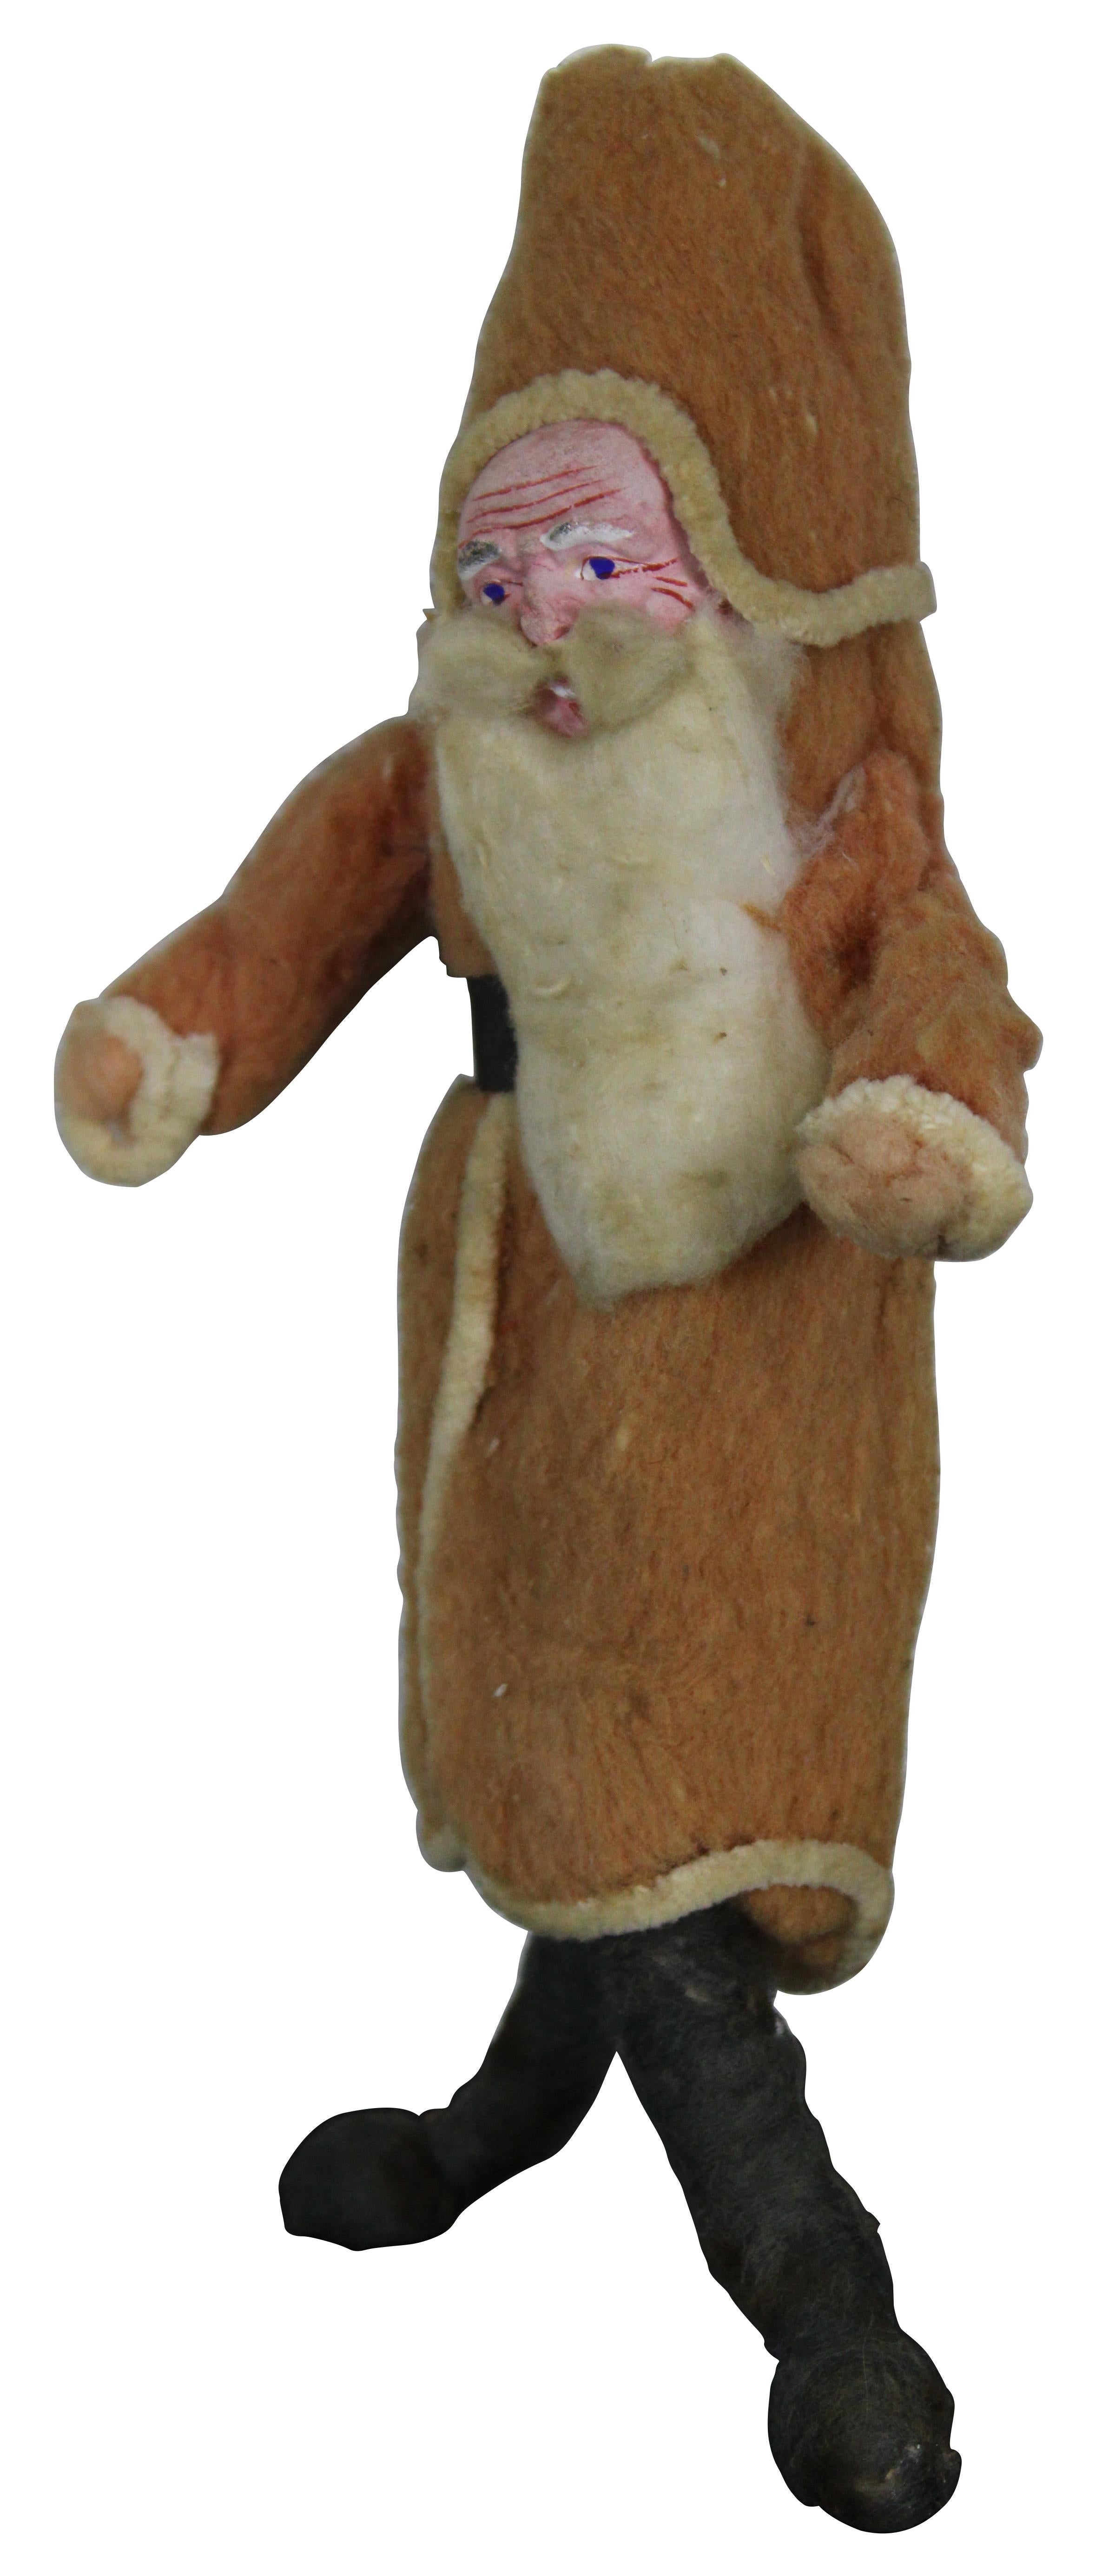 Grande poupée allemande ancienne en coton filé, décorant le Père Noël, avec un visage de composition peint à la main.
Mesure : 9